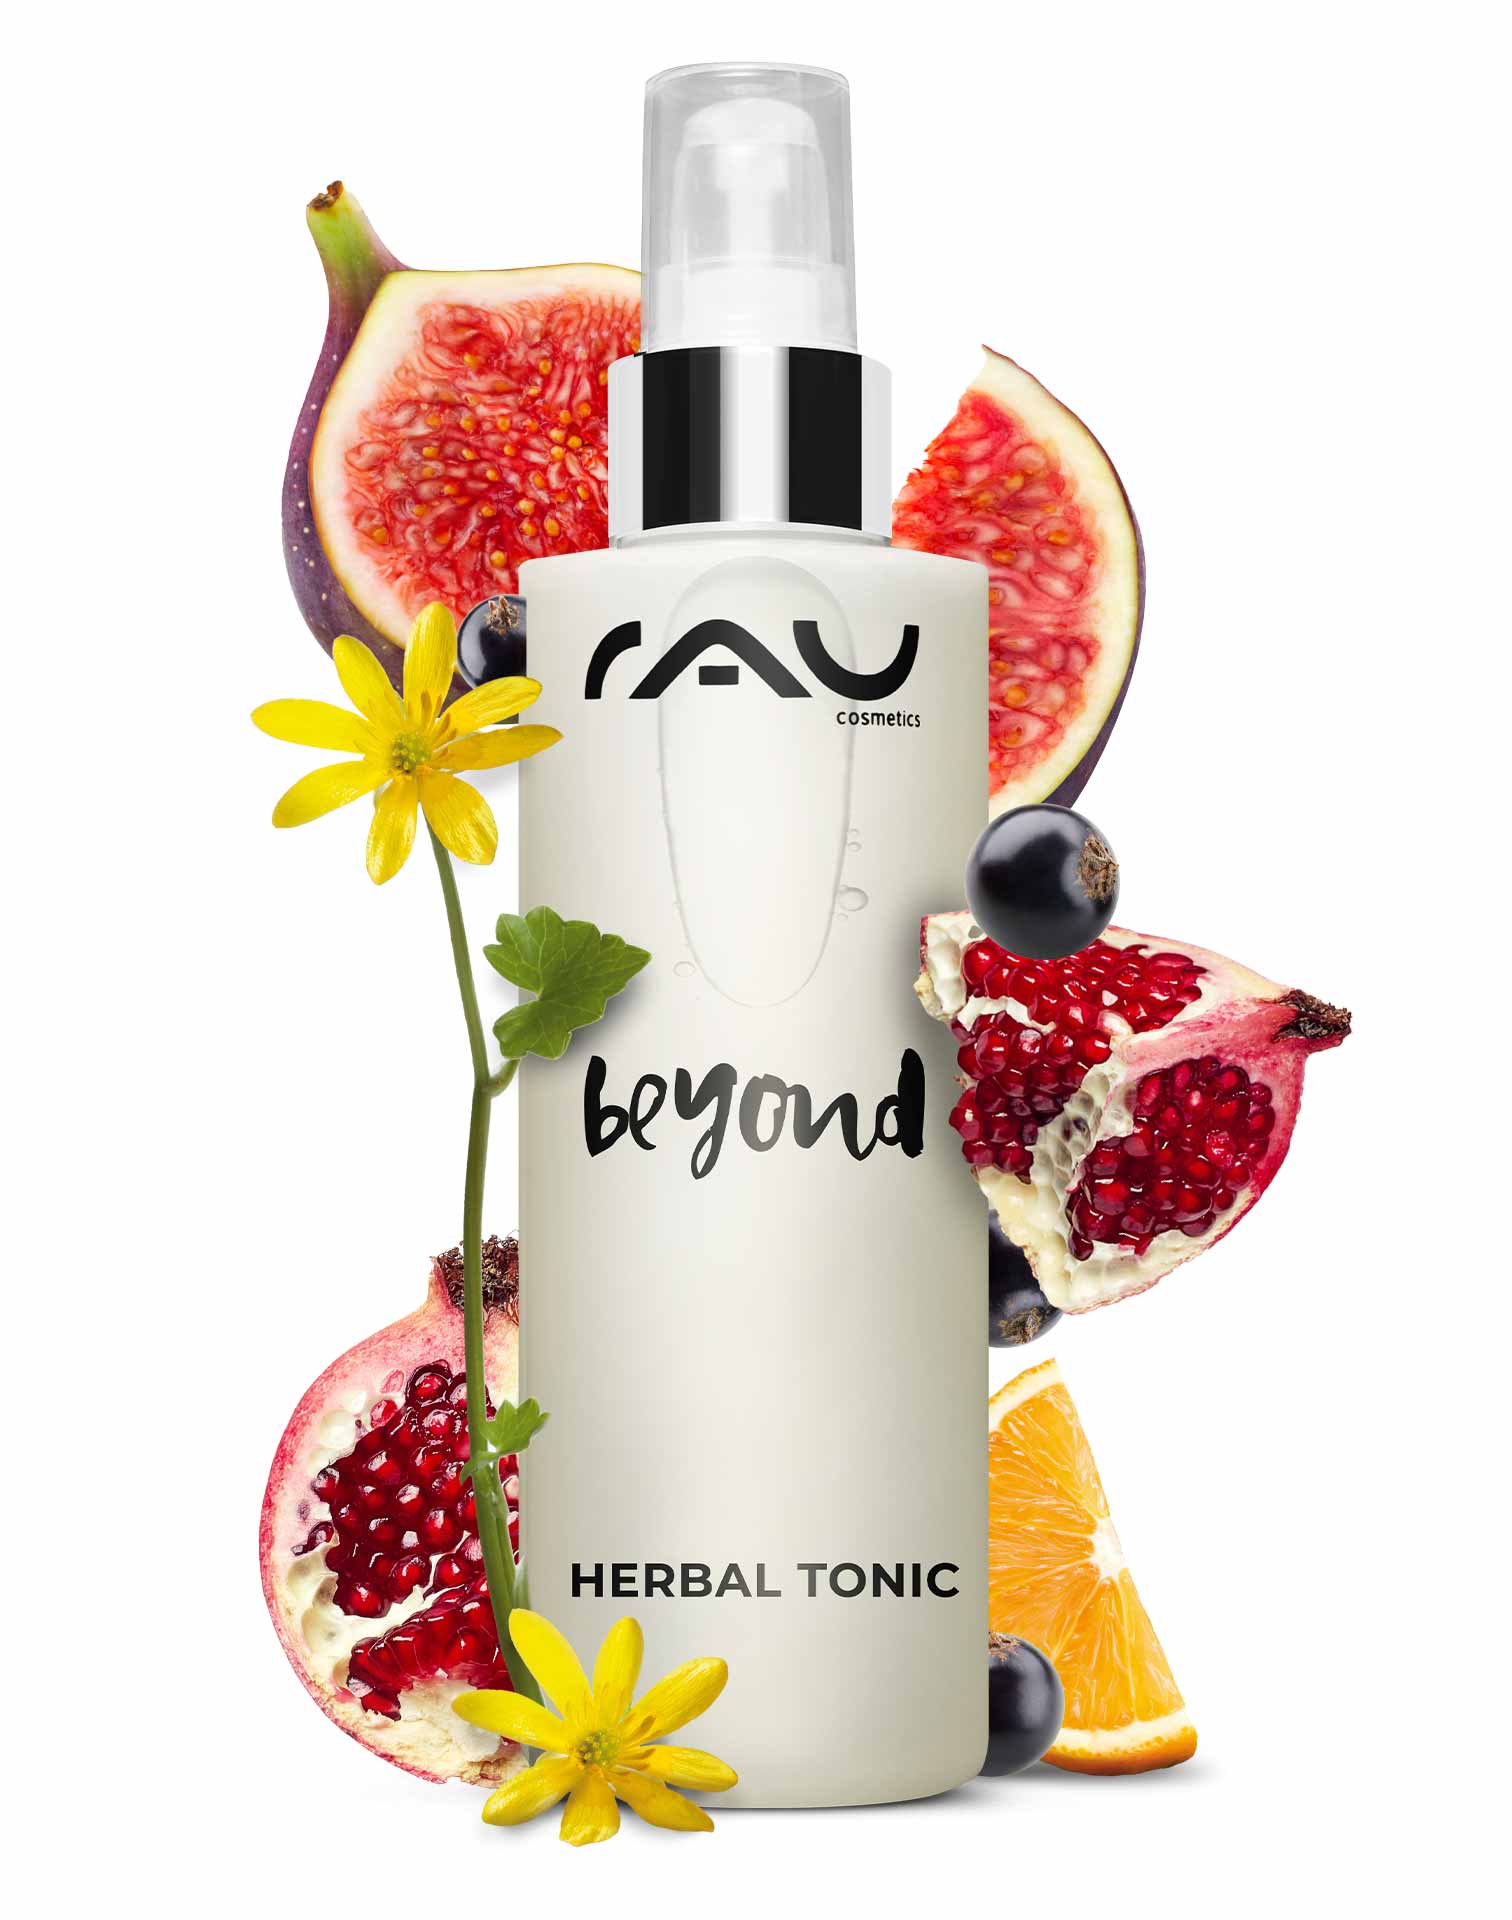 Beyond Herbal Tonic 200 ml Natural Cosmetic Toner